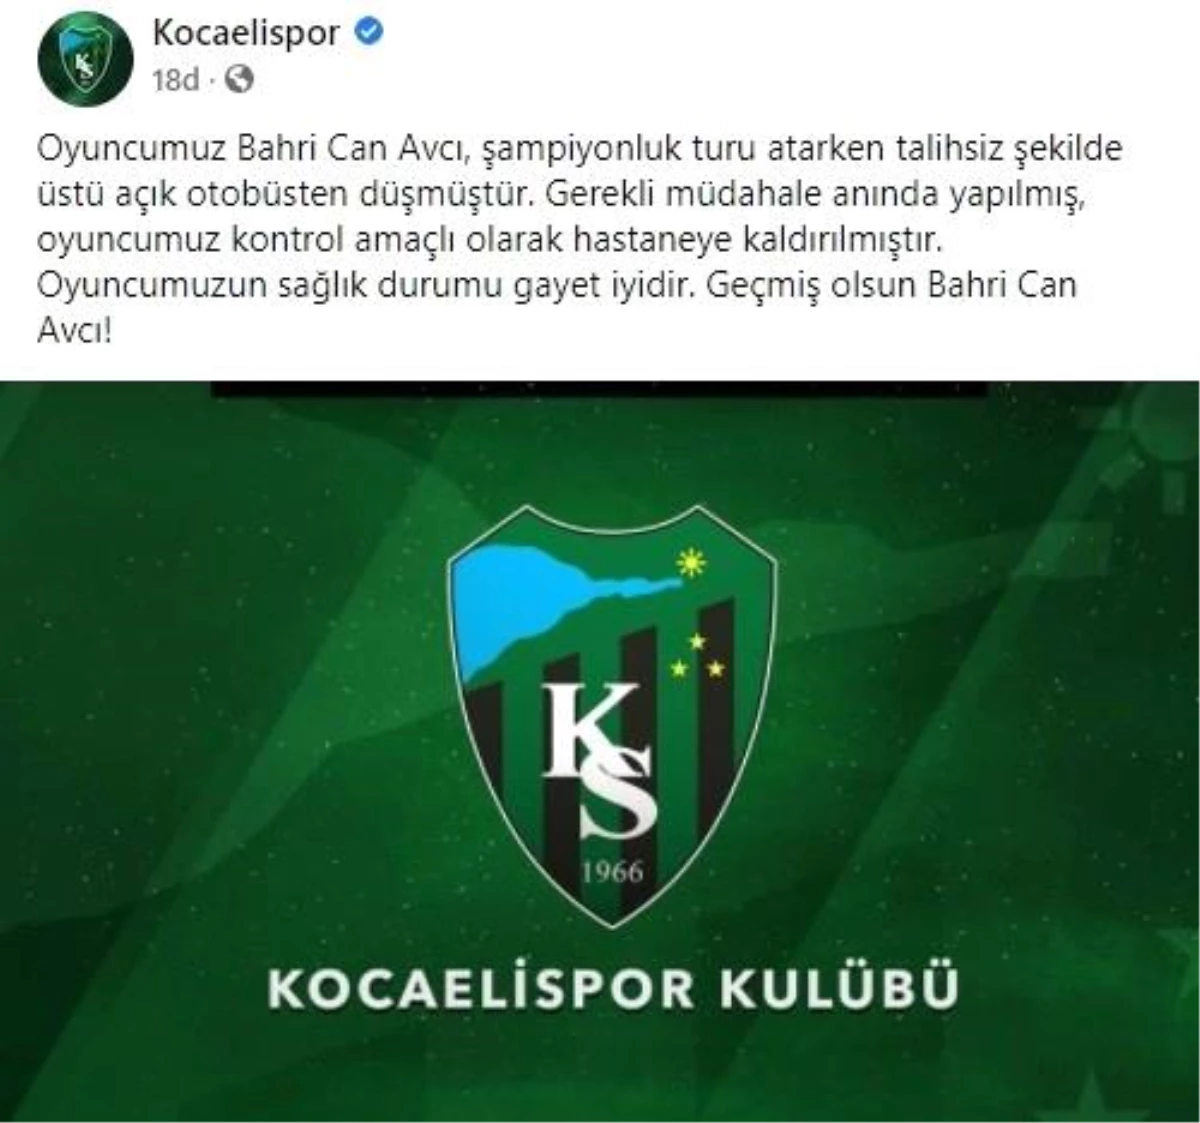 Kocaelispor şampiyonluk turunda iki futbolcu yaralandı: Futbolcu otobüsten böyle düştü